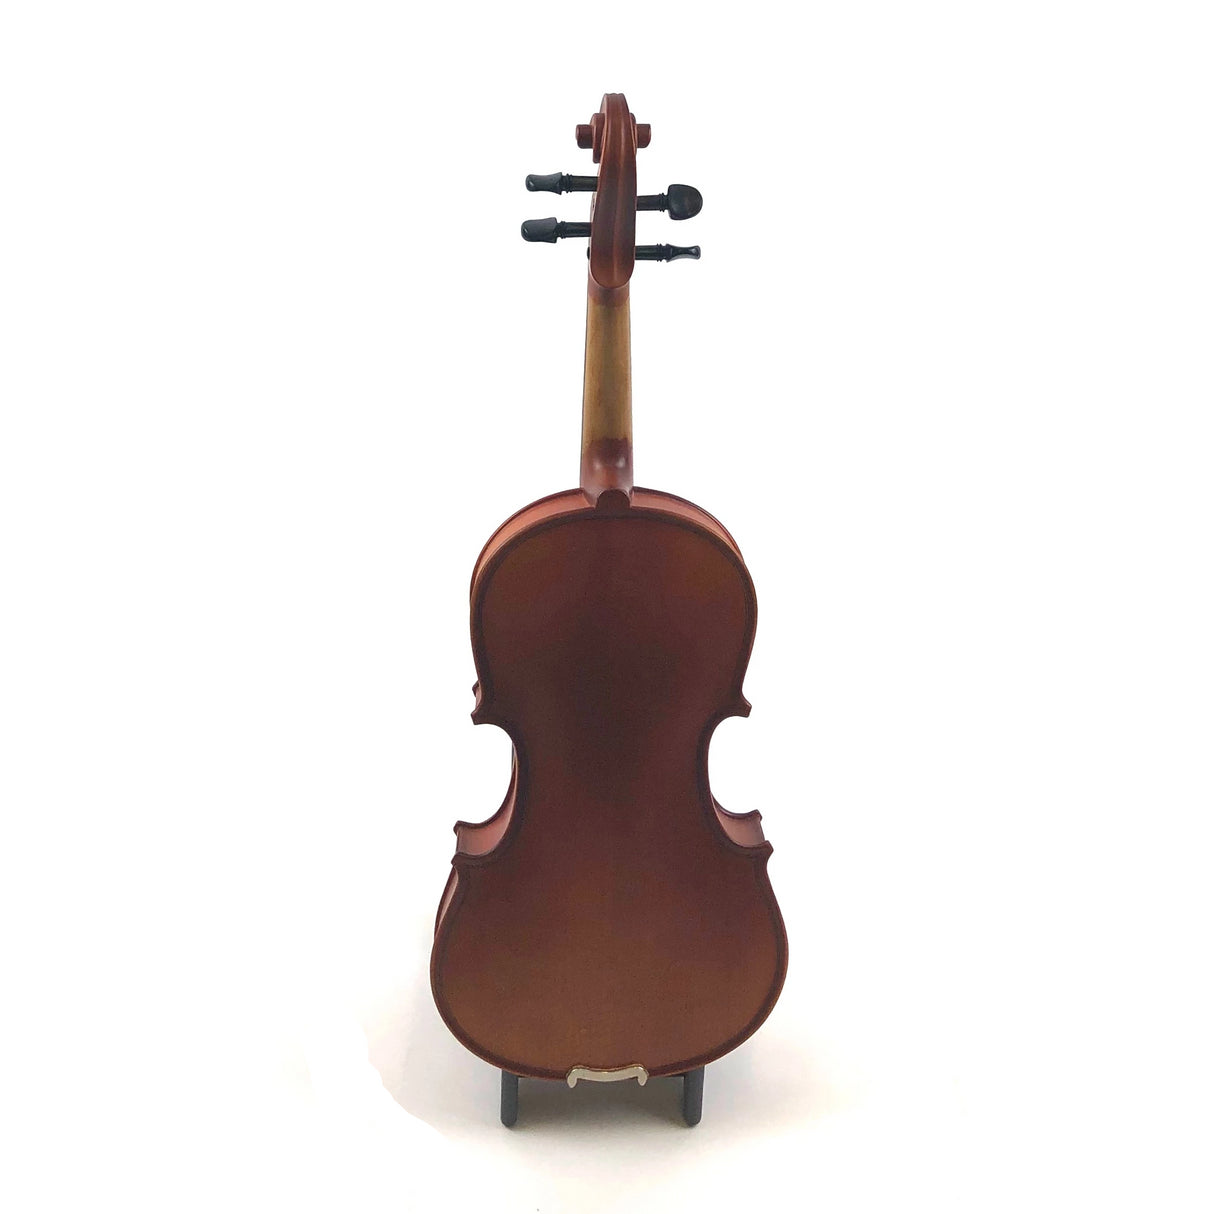 Sandner Violinset Mod. 302 1/4 - Musik-Ebert Gmbh